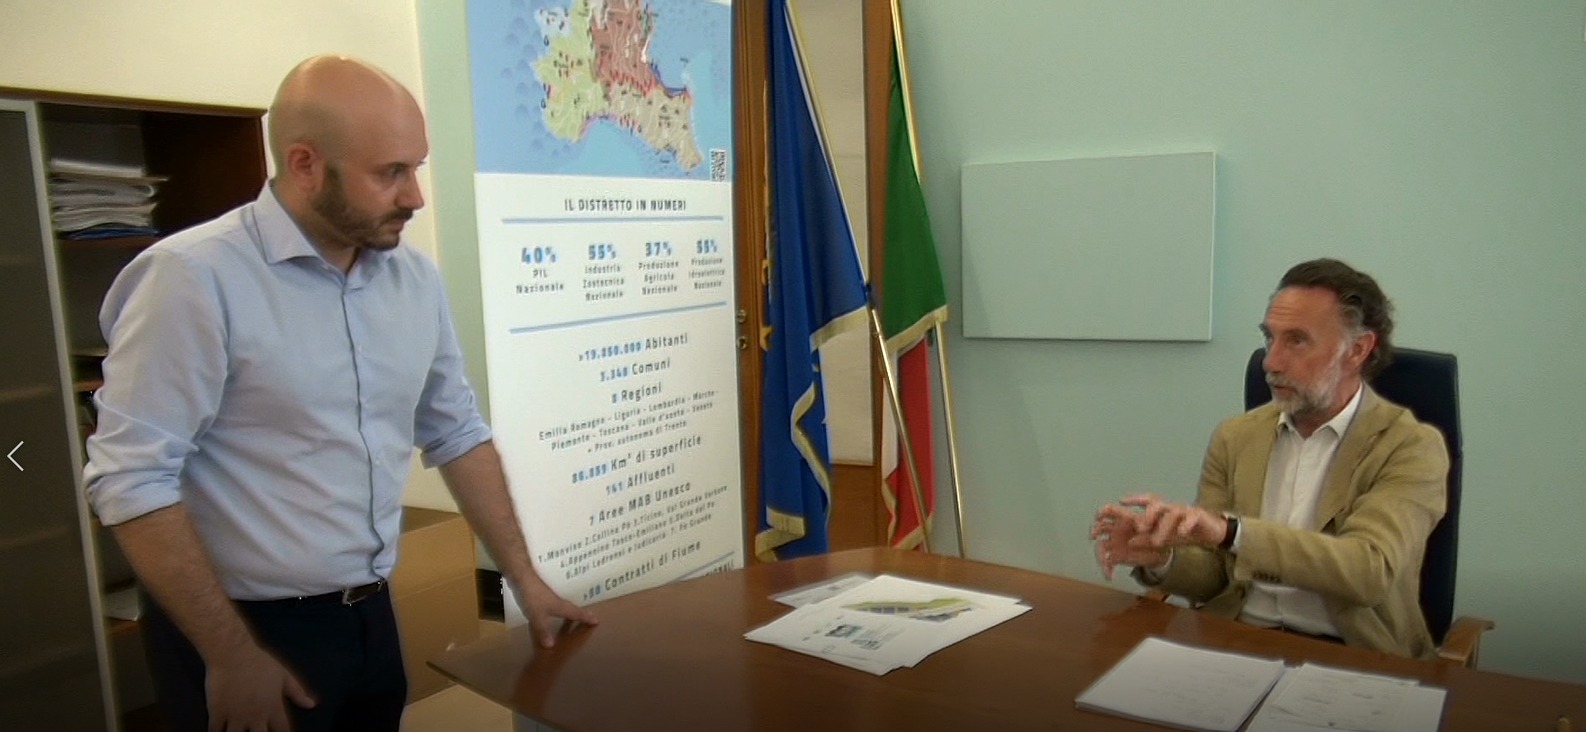 Πρωτοφανής λειψυδρία στη Βόρειο Ιταλία: Συνέντευξη στον Γ.Γ. της Περιφερειακής Αρχής του Πάδου ποταμού στην ΕΡΤ